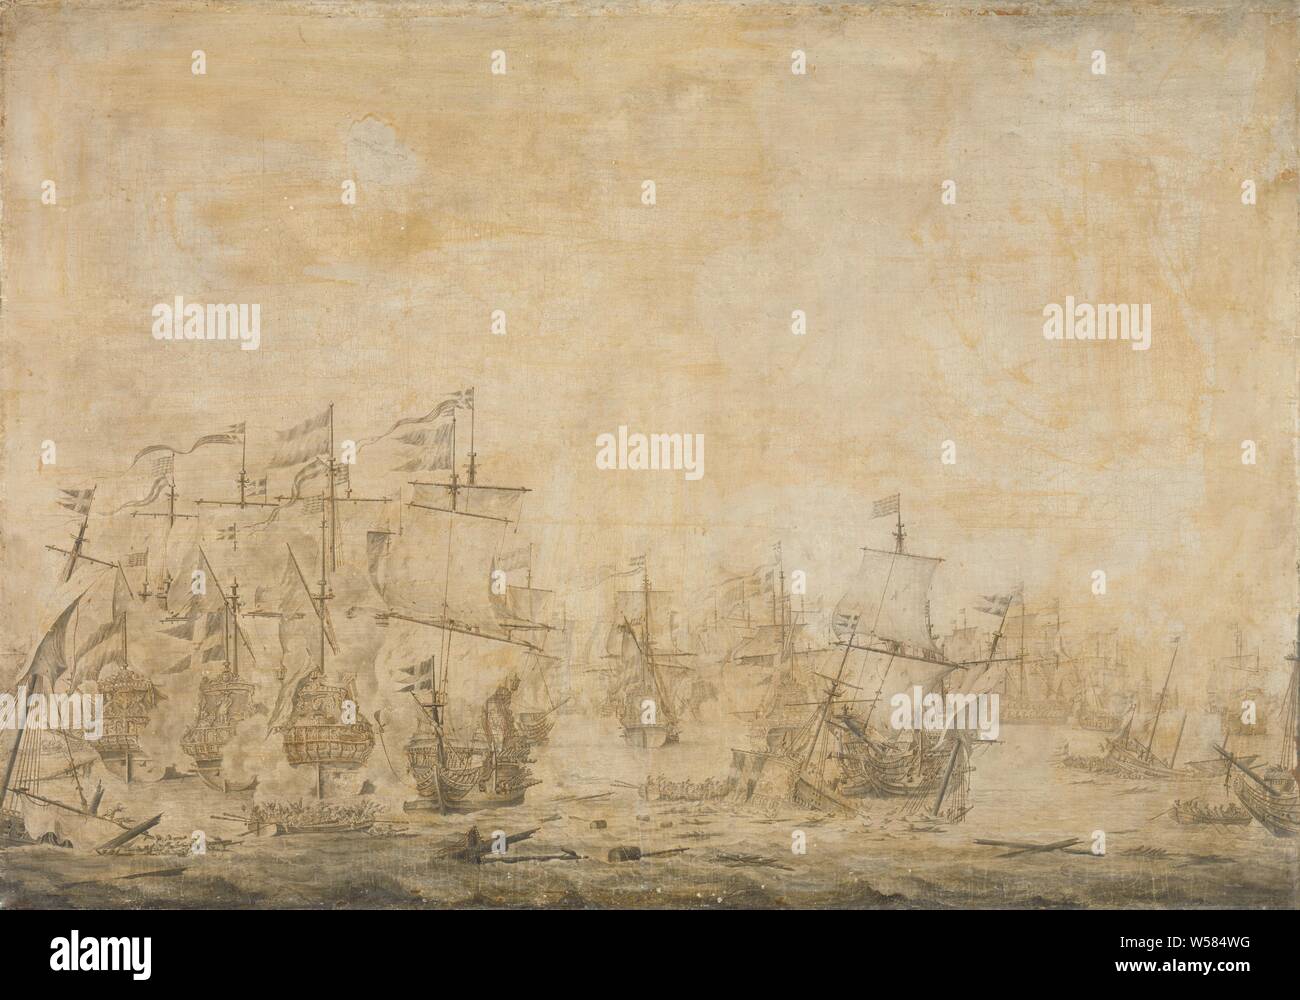 Kampf zwischen der niederländischen und der schwedischen Flotte, im Ton, 8. November 1658, Episode aus der Schlacht in der Sound zwischen der niederländischen und der schwedischen Flotten, 8. November 1658. Auf der linken Seite eine Gruppe von drei niederländischen Kriegsschiffe einschließlich der Eendracht, im Vordergrund ein sinkendes schwedische Schiff, von dem aus die Besatzung versucht, sich selbst zu retten., Willem van de Velde (I) (zugeschrieben), 1658 - 1693, Leinwand, Tinte, h 100 cm x W 142 cm d 8,5 cm Stockfoto